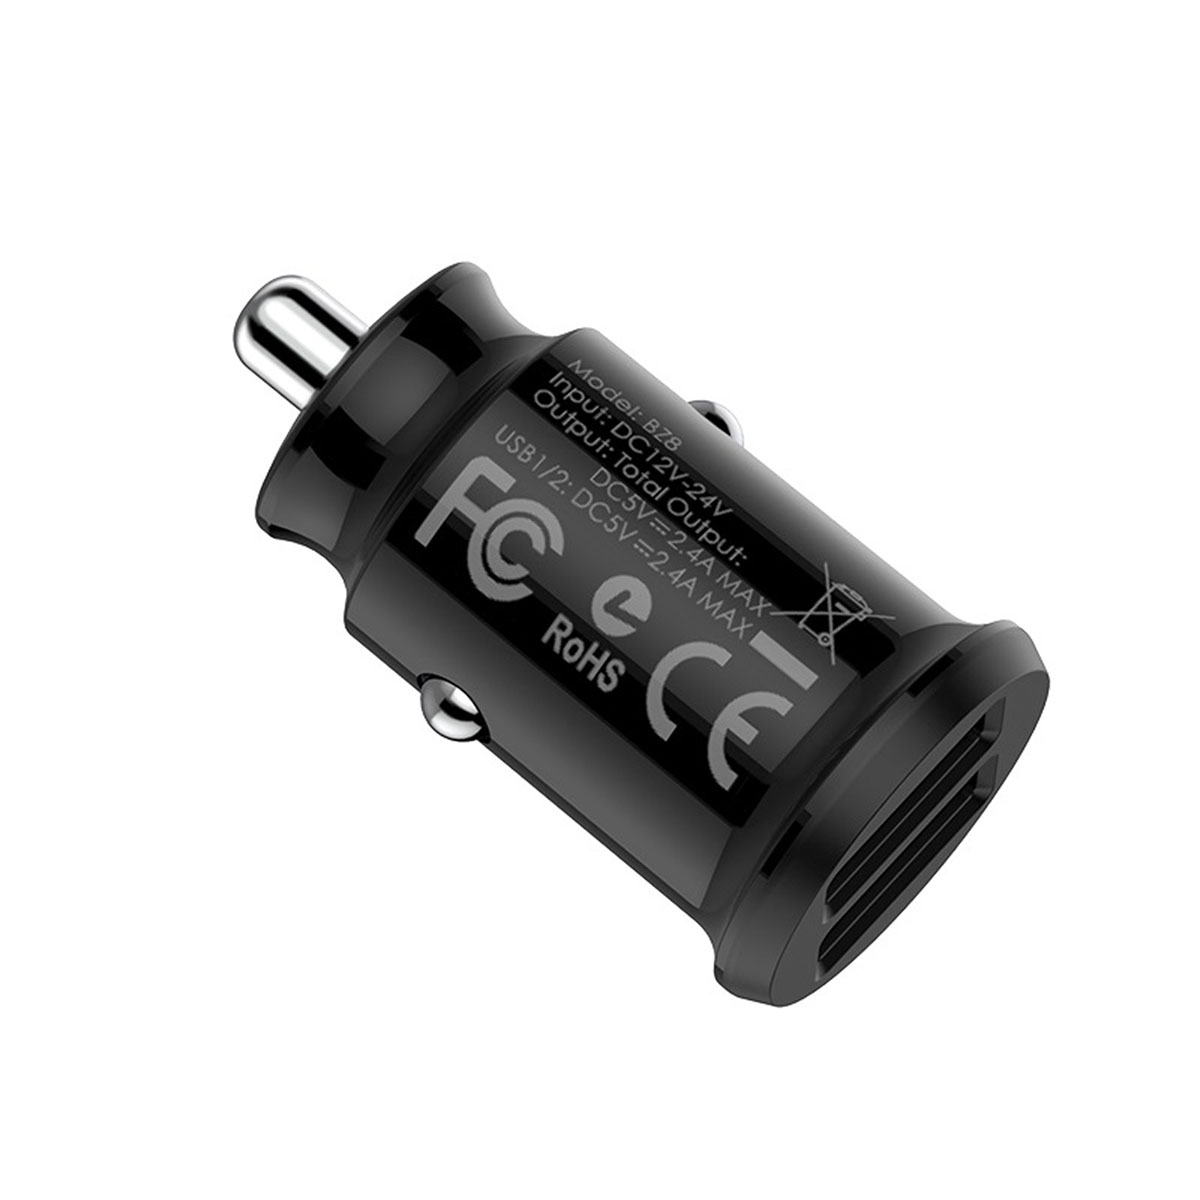 АЗУ (Автомобильное зарядное устройство) BOROFONE BZ8 MaxRide, с двумя USB портами, 2.4 А, цвет черный.